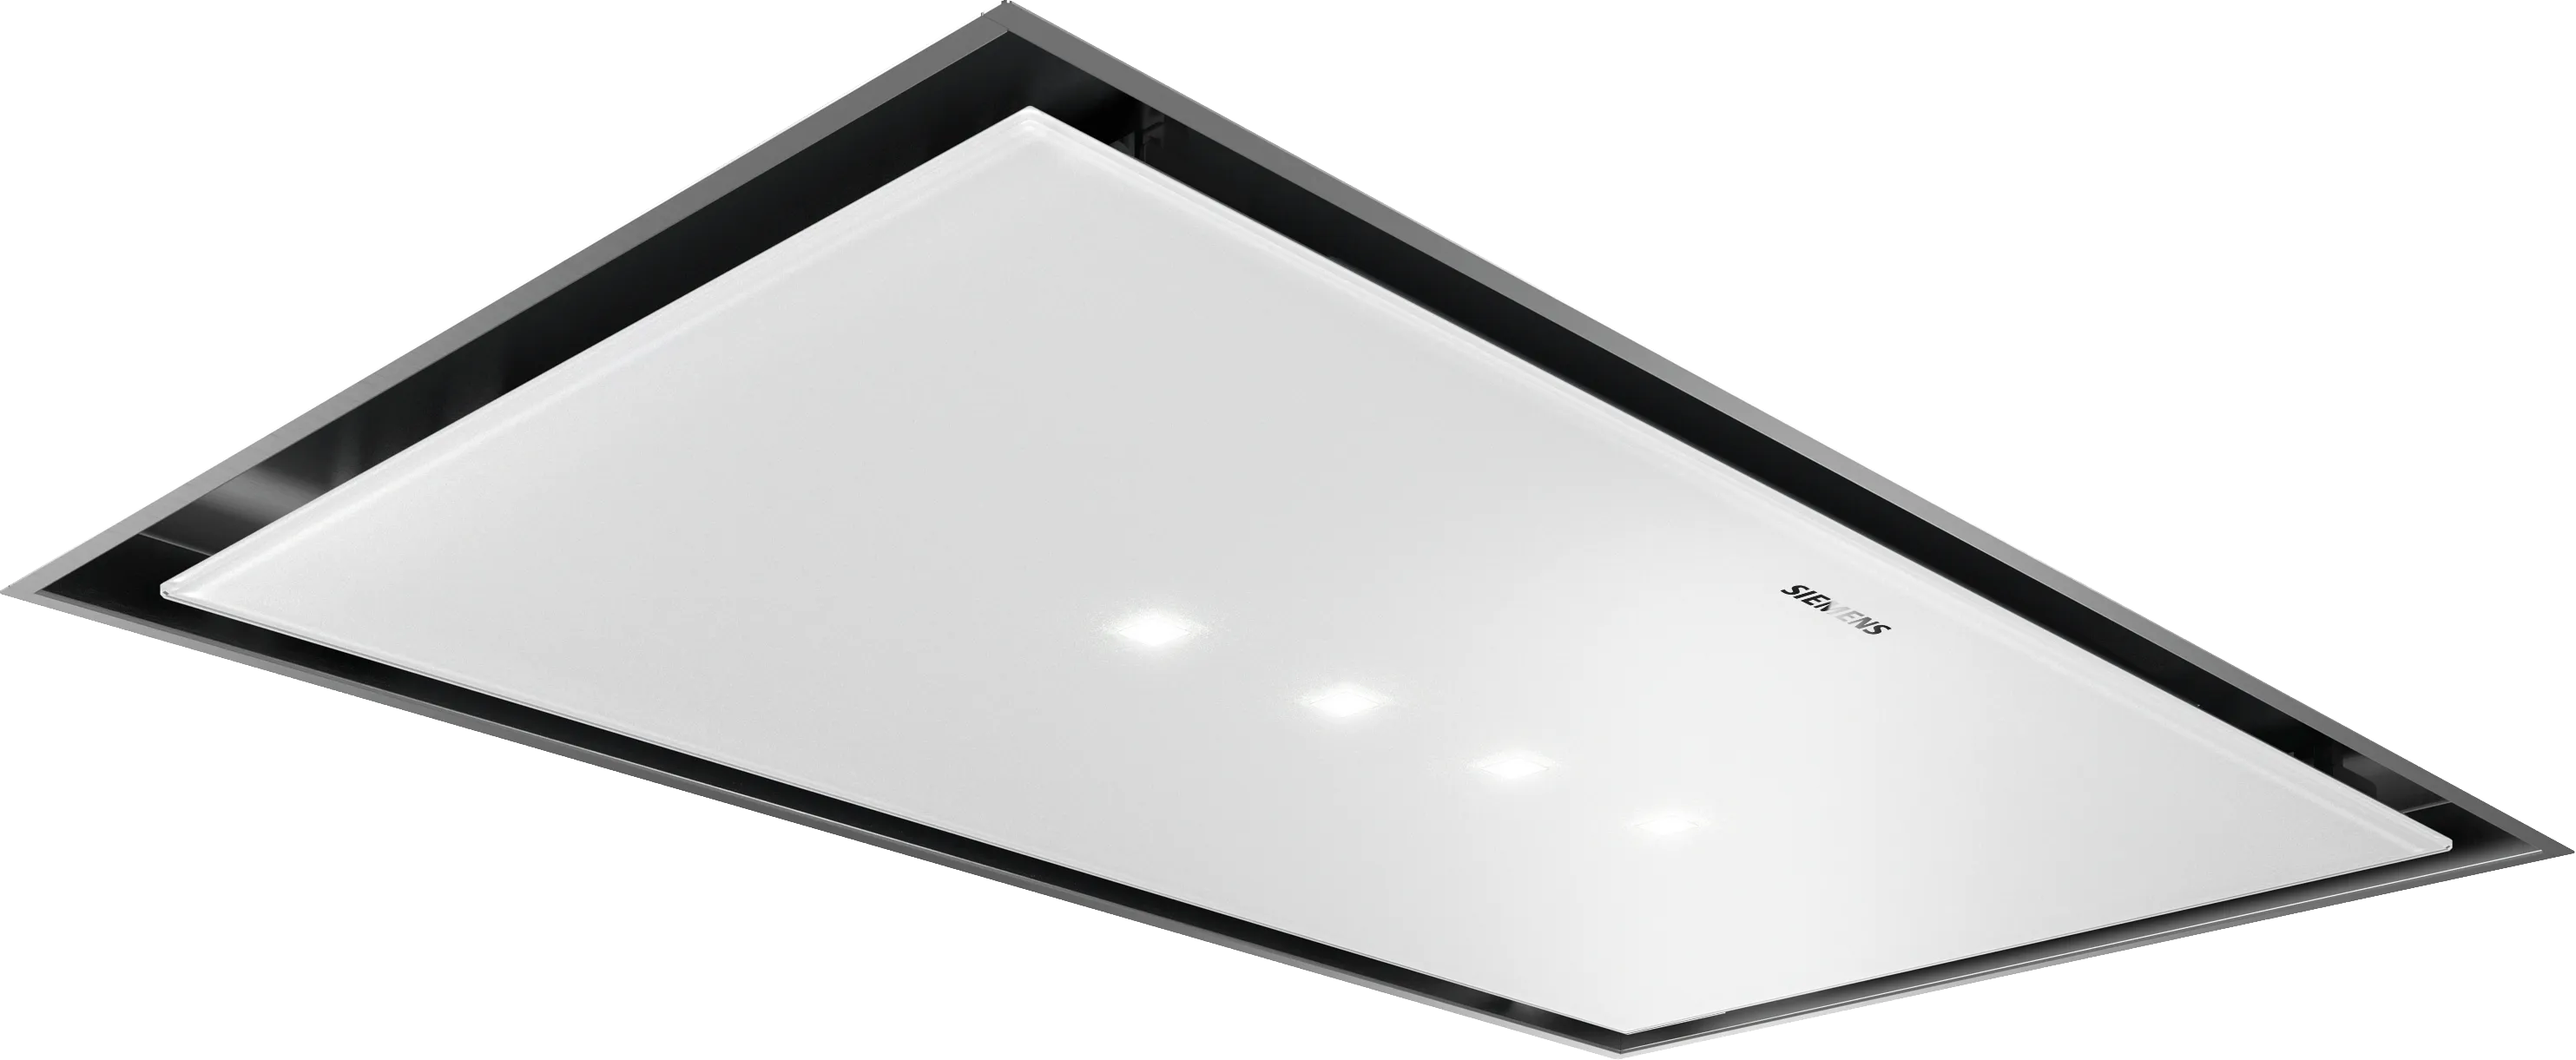 iQ500 ceiling cooker hood 90 cm Blanc 